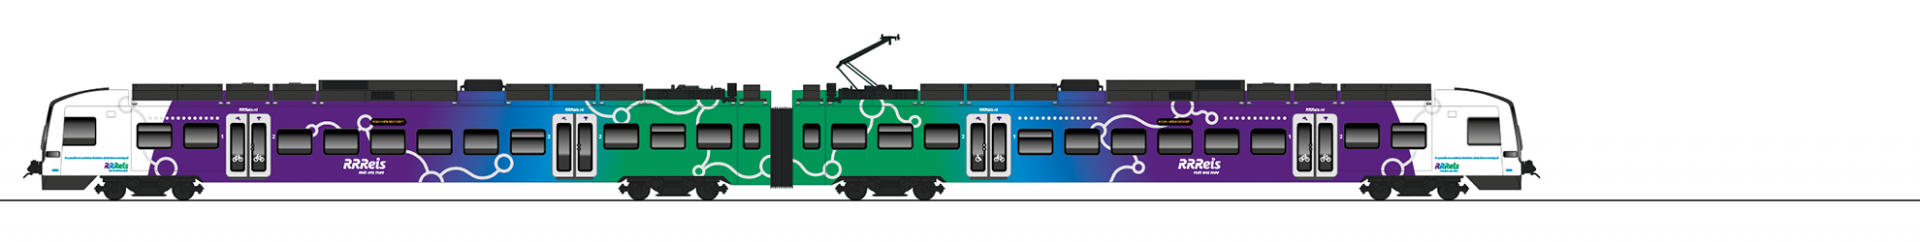 RRReis trein voorbeeld Protos